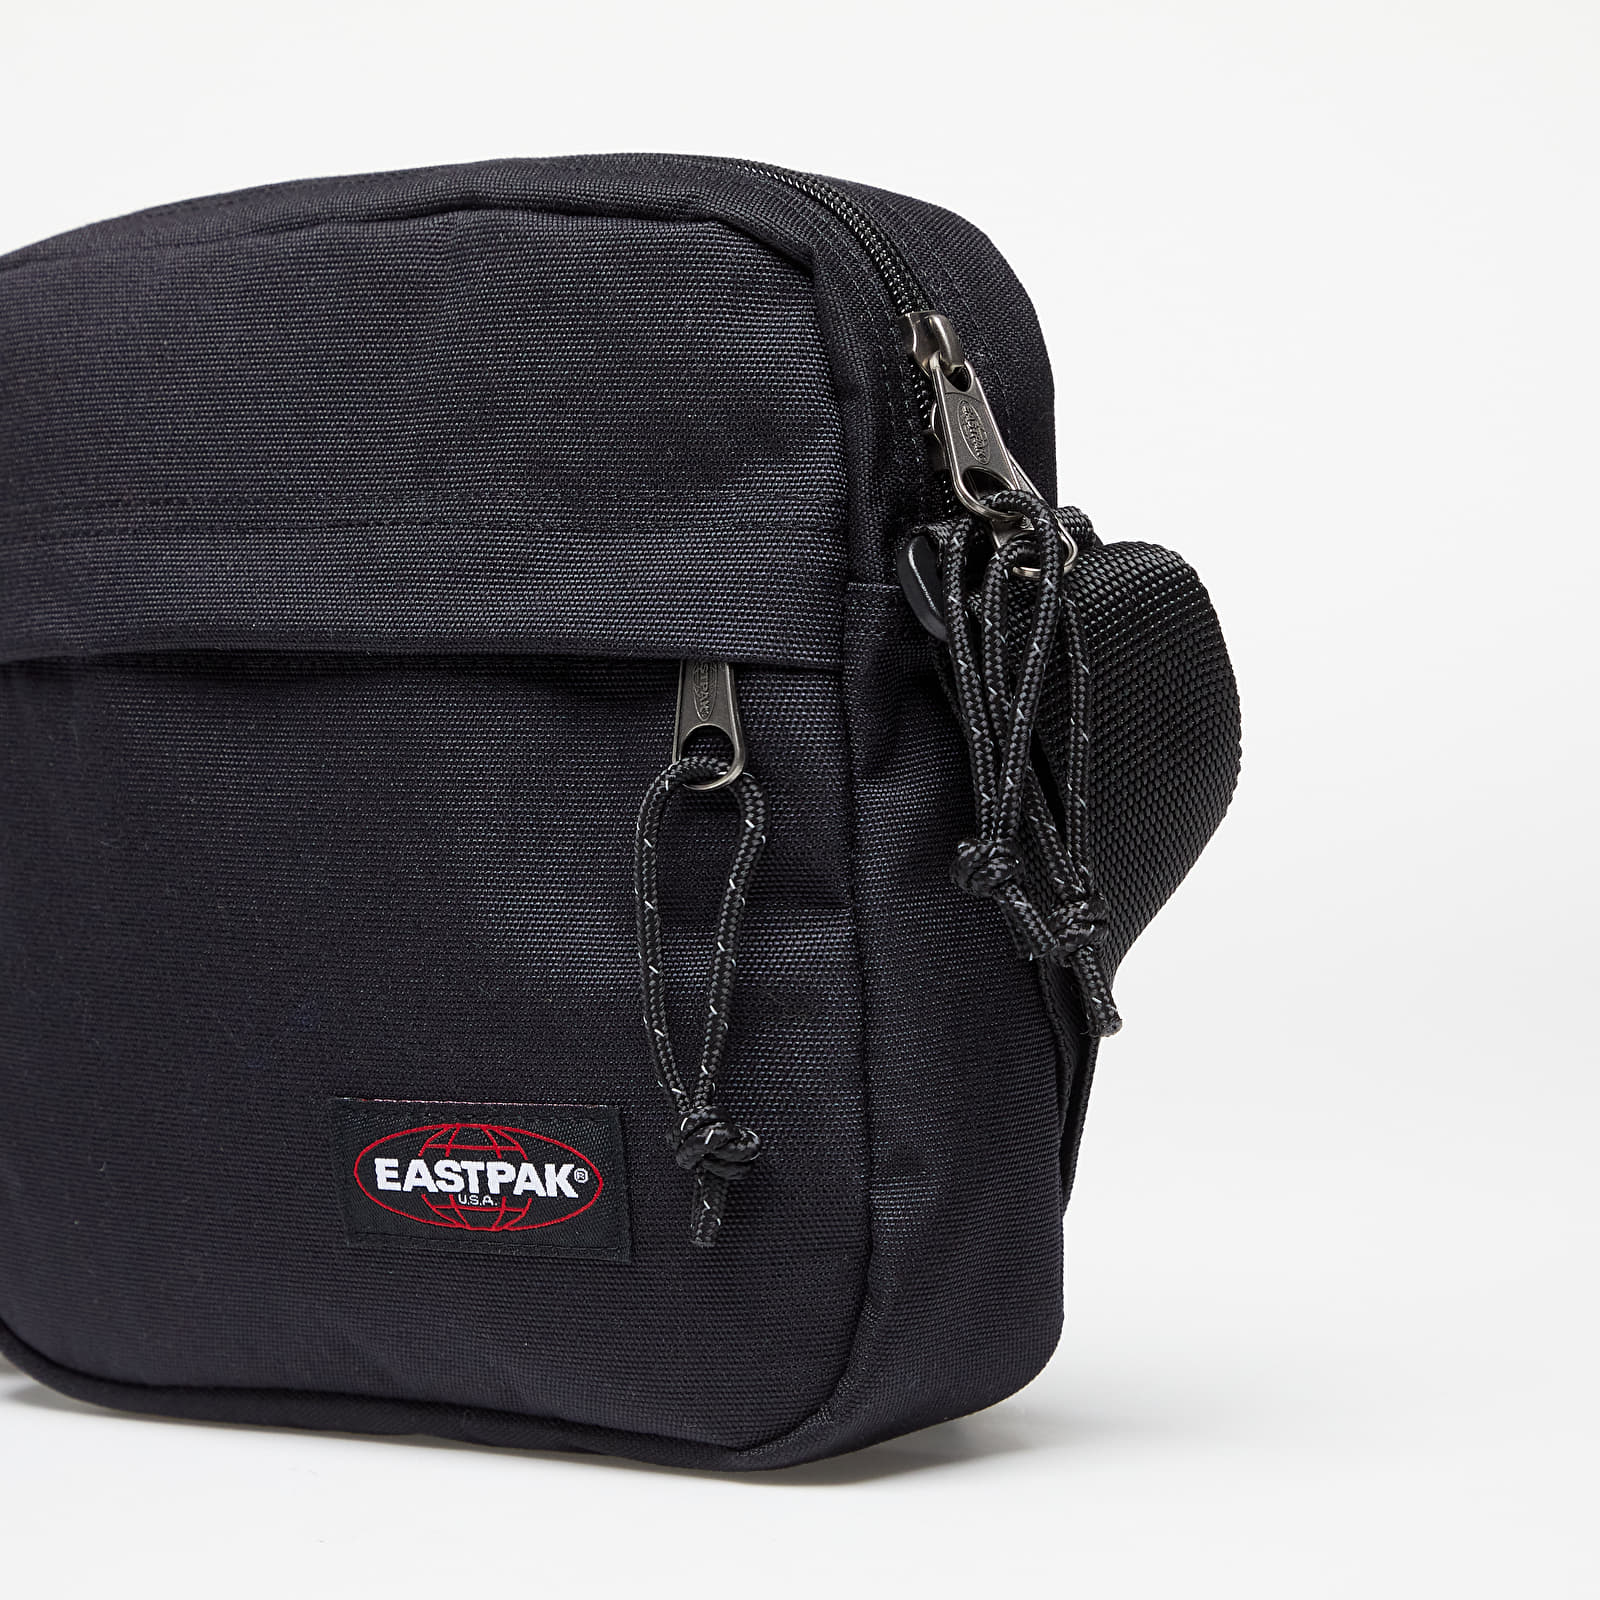 SUPER SCONTO su questa utilissima borsa a tracolla Eastpak (-22%) -  CulturaPop